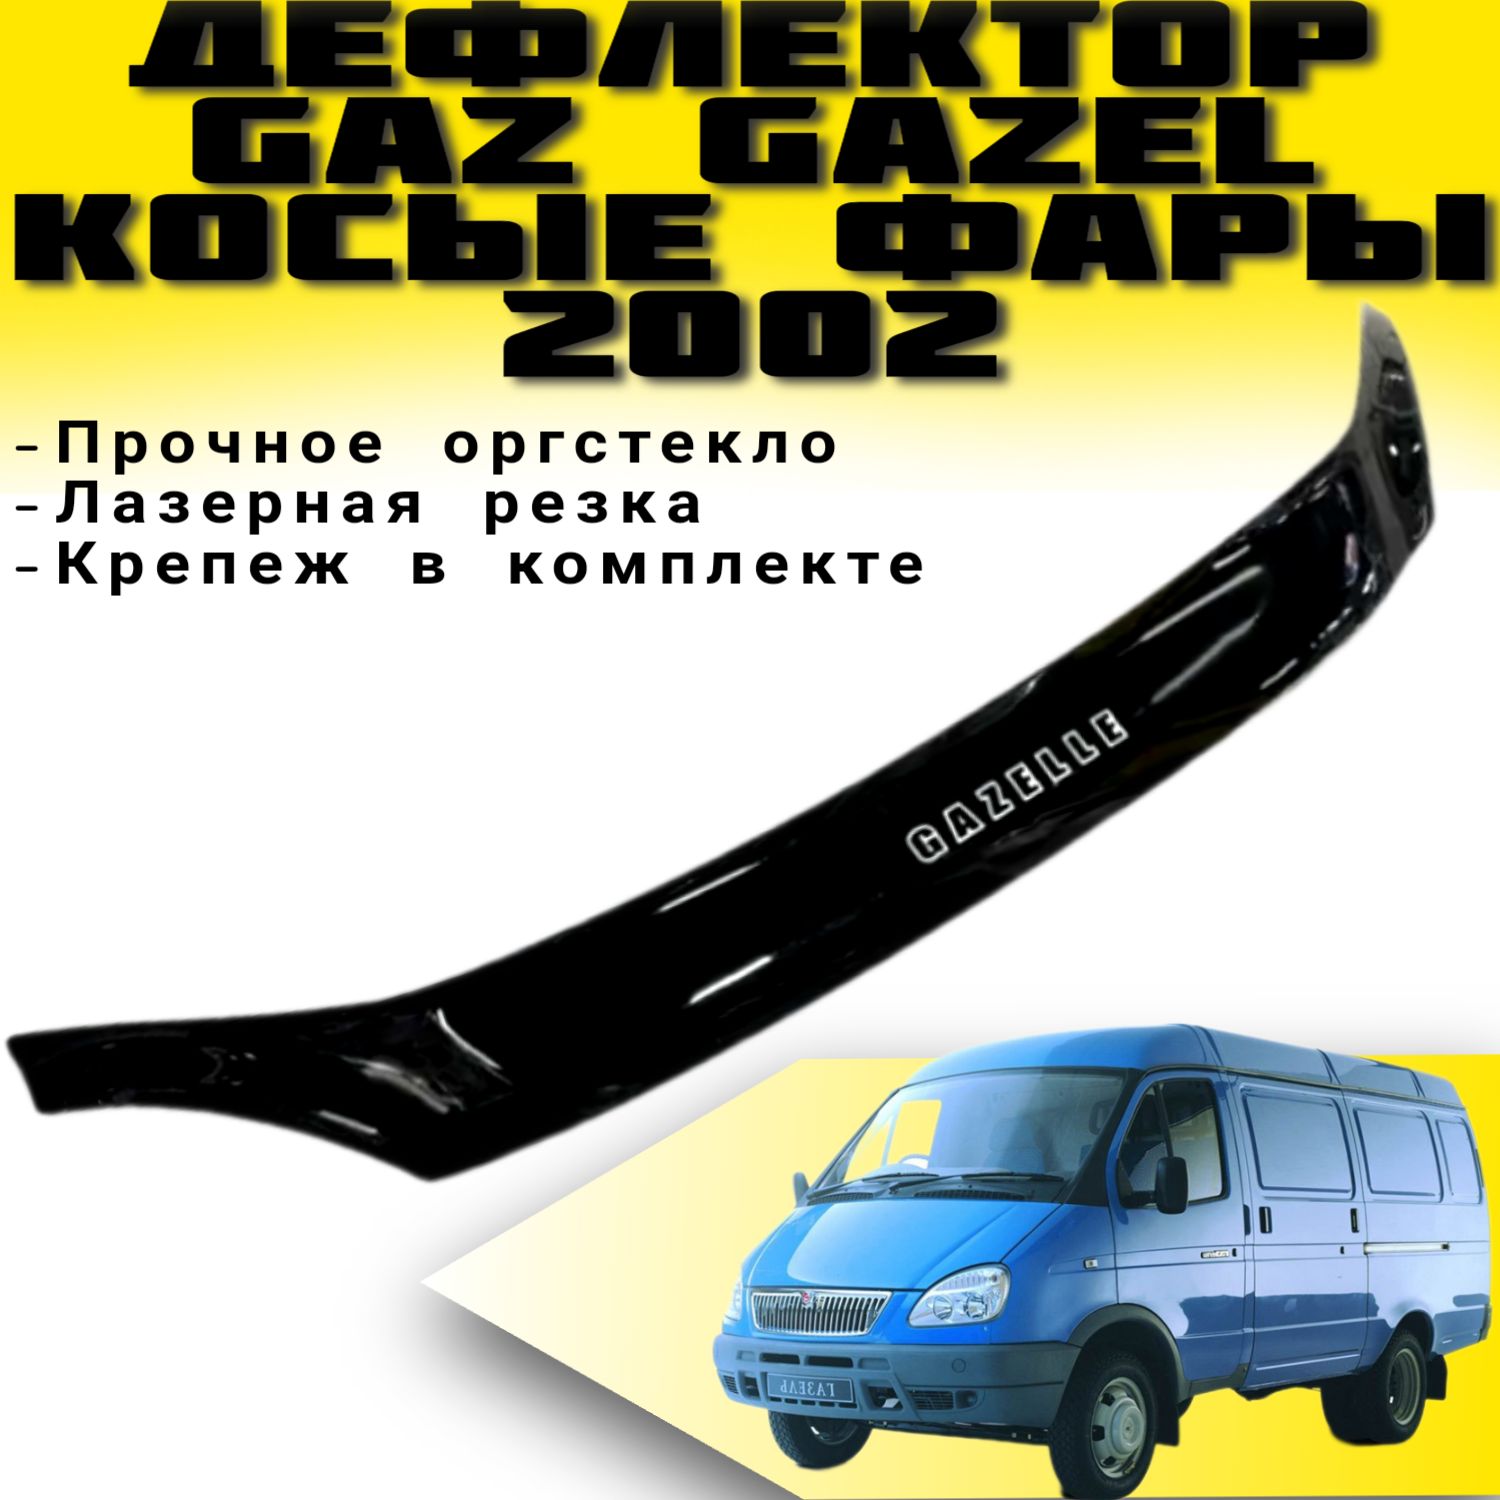 Газелист52 - Автозапчасти ГАЗ, Газель интернет магазин